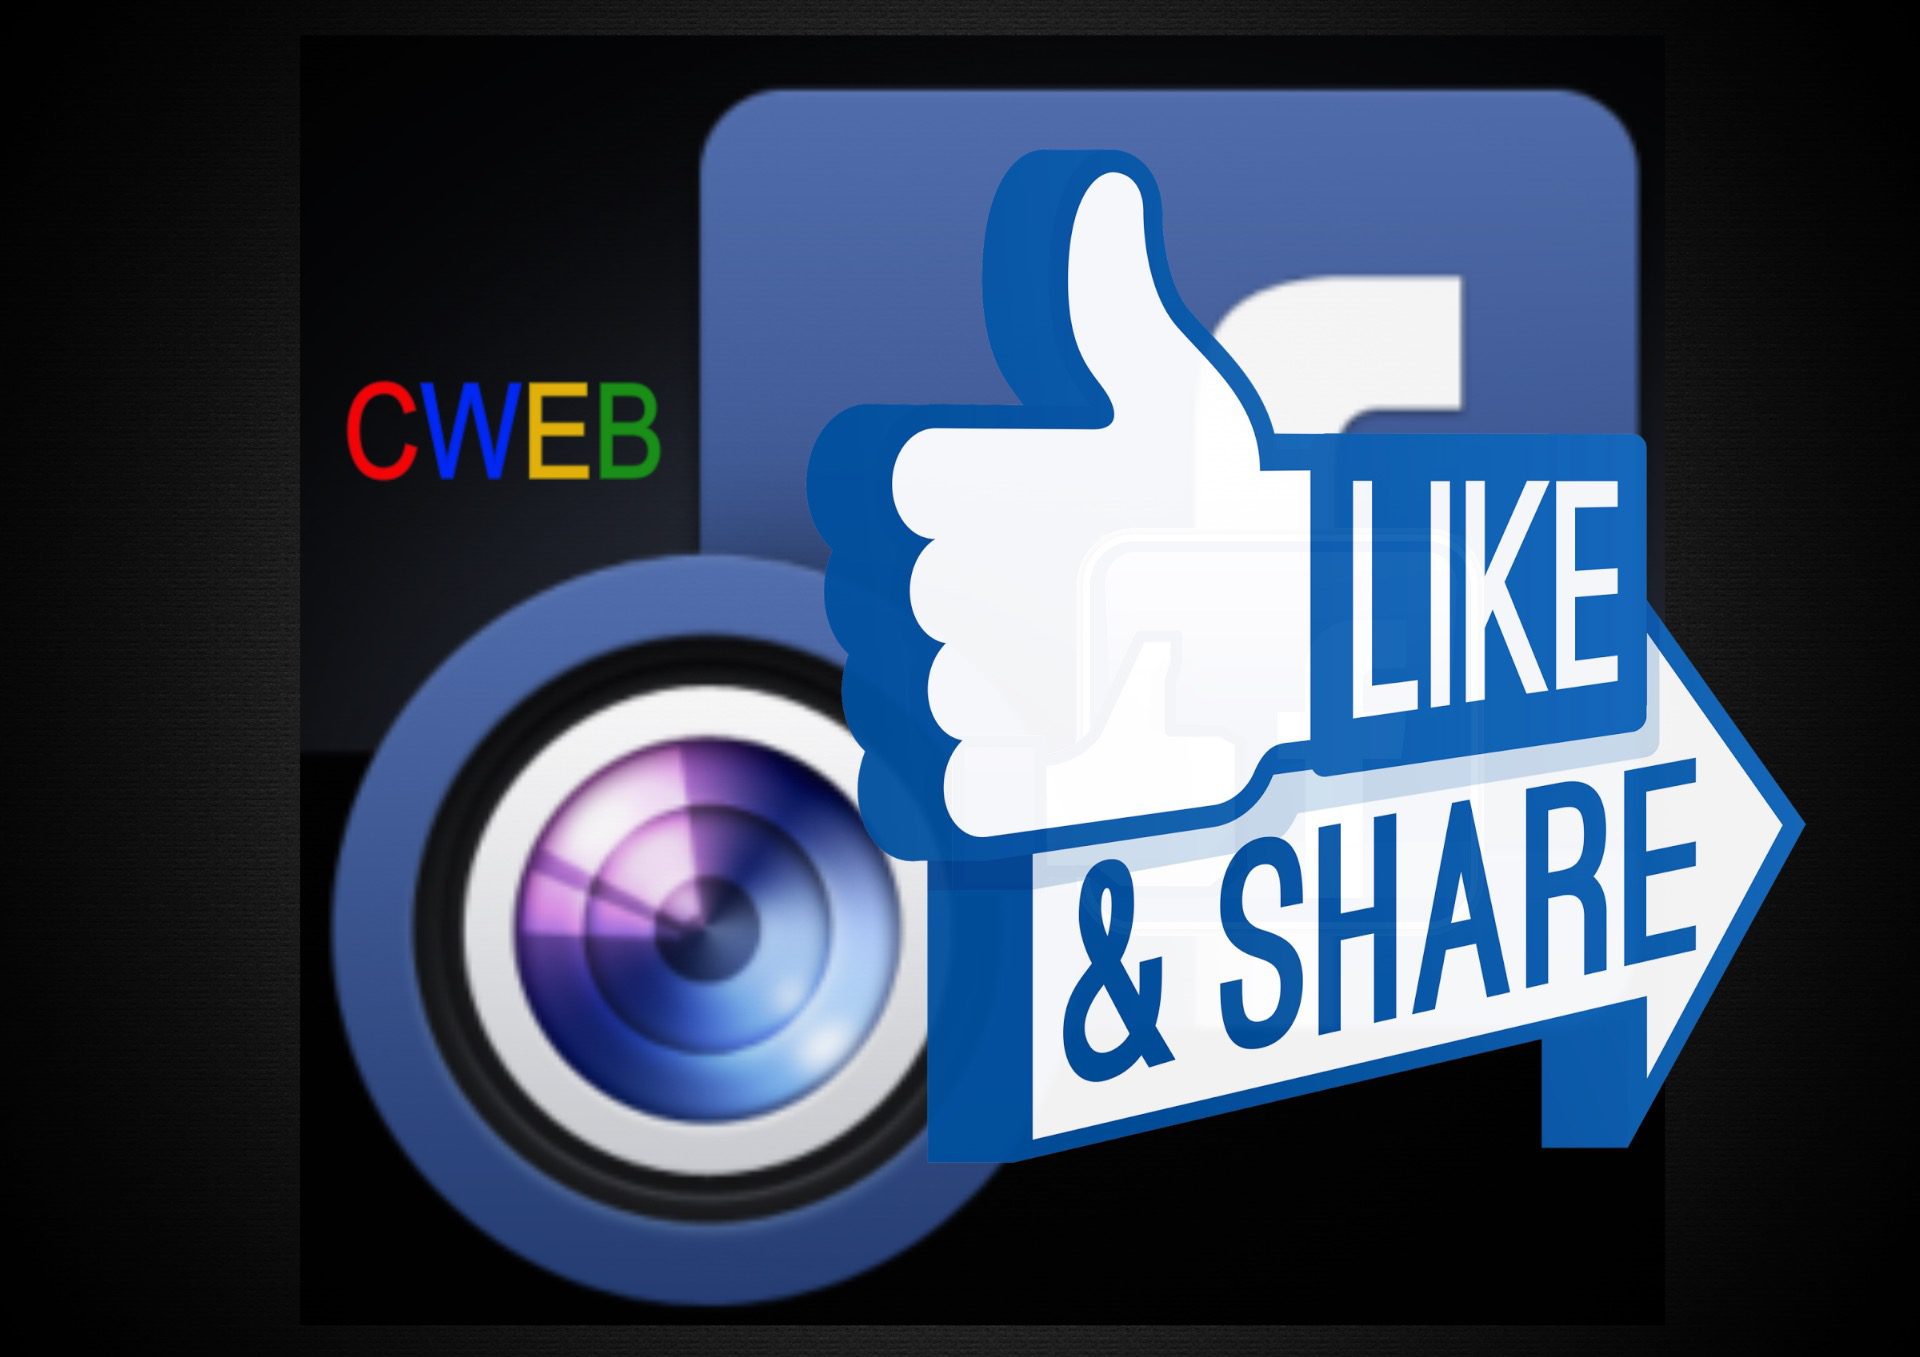 Facebook camera new features – CWEB.com